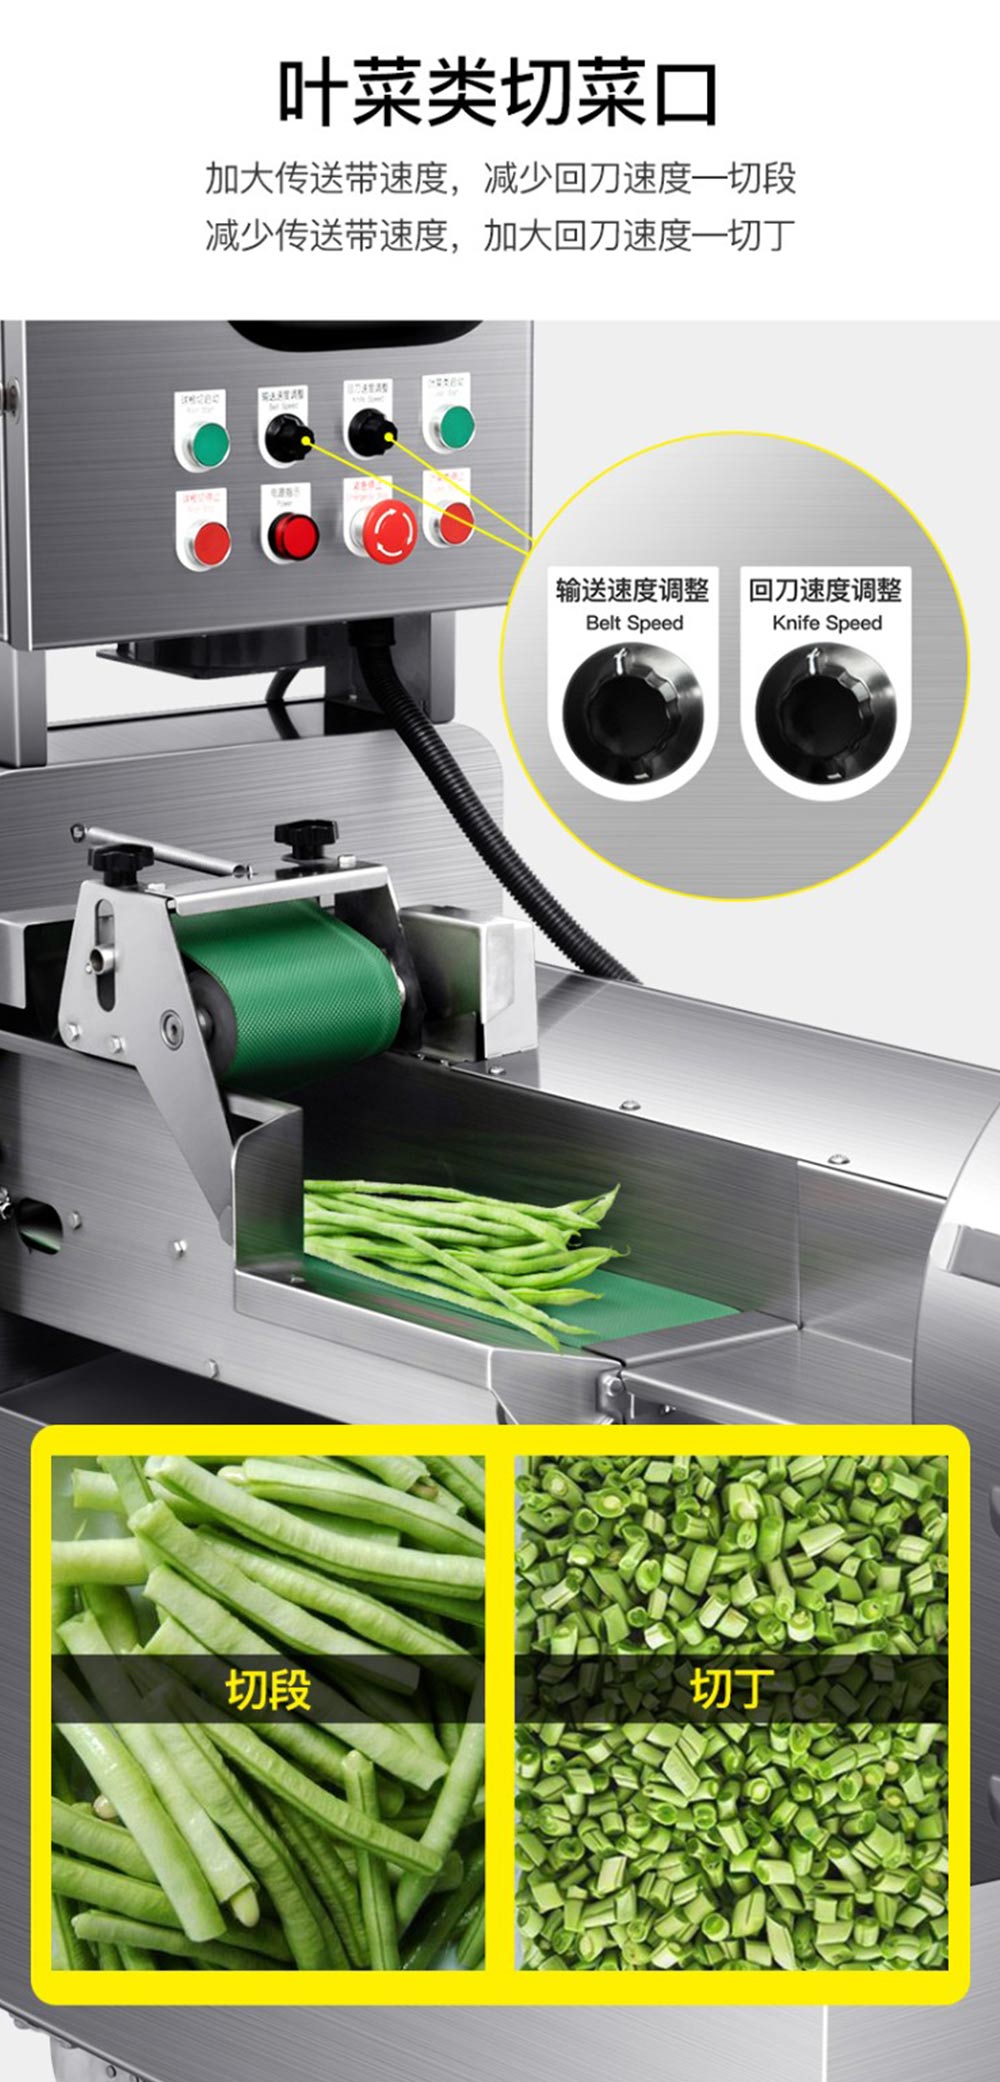 商用大型全自动多功能切菜机 切丁机 切片机(图8)